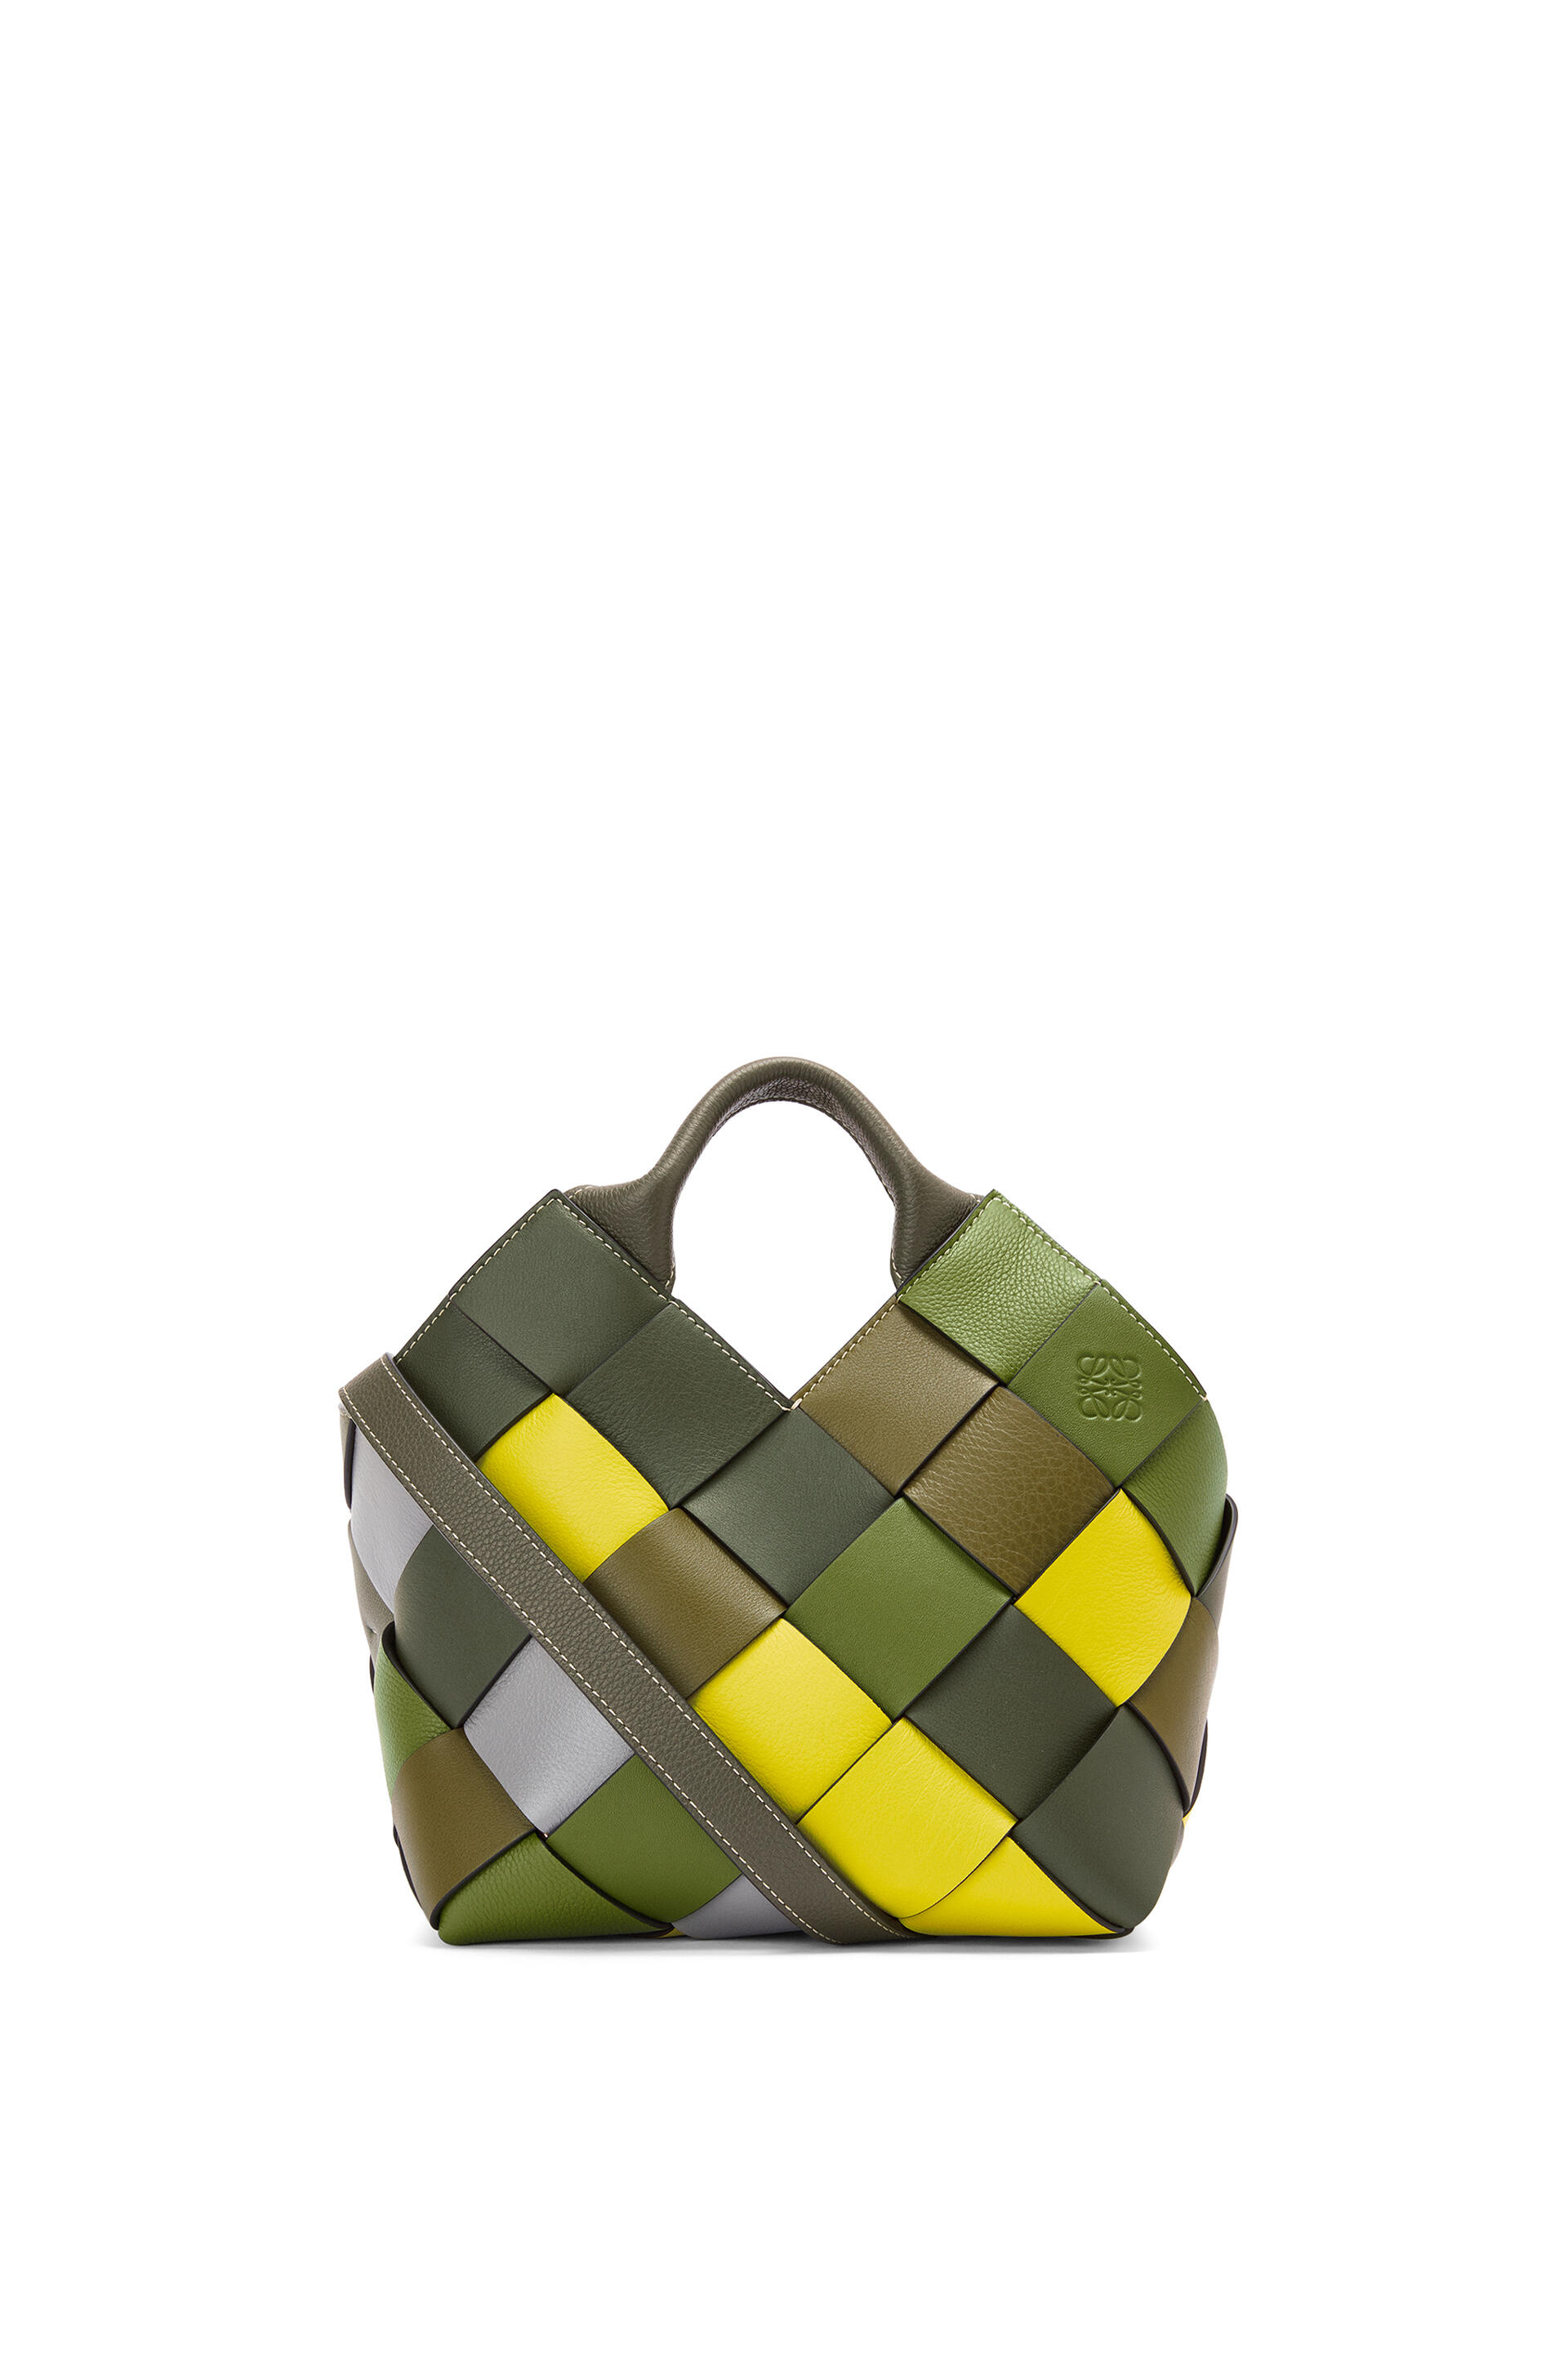 ロエベ ウーブン バスケットバッグ スモール (カーフ) グリーン/グリーン | Loewe Woven Basket Bag Small Calf Green Green